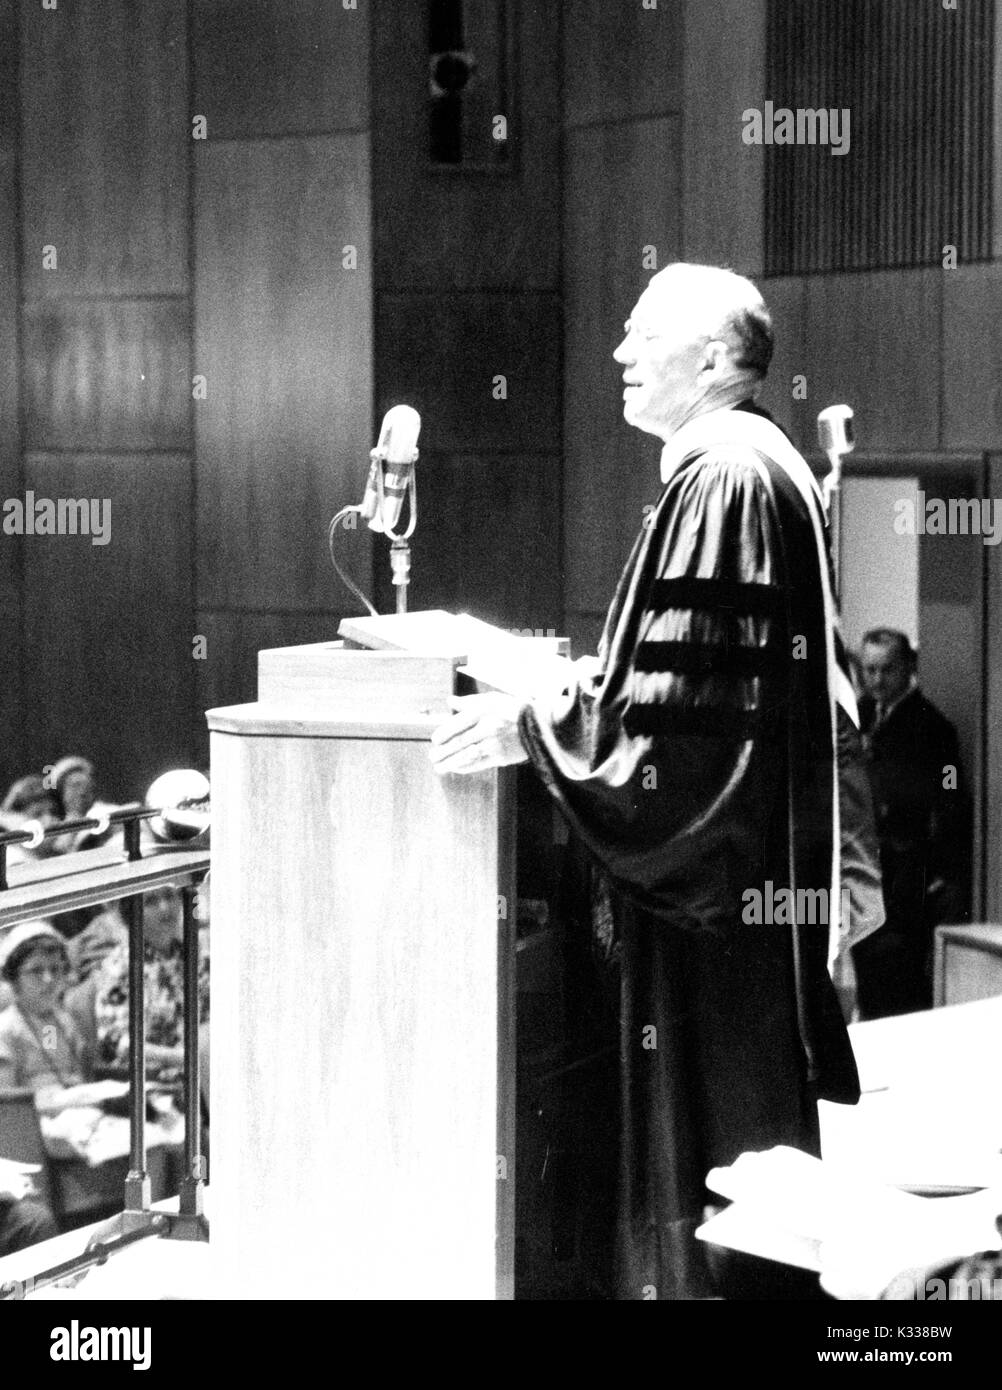 Portrait de Candide American educational administrator et président de l'Université Johns Hopkins, Milton S. Eisenhower debout sur un podium en livrant un discours sur le hall de Shriver Homewood campus de l'Université Johns Hopkins de Baltimore, Maryland, 1963. Banque D'Images